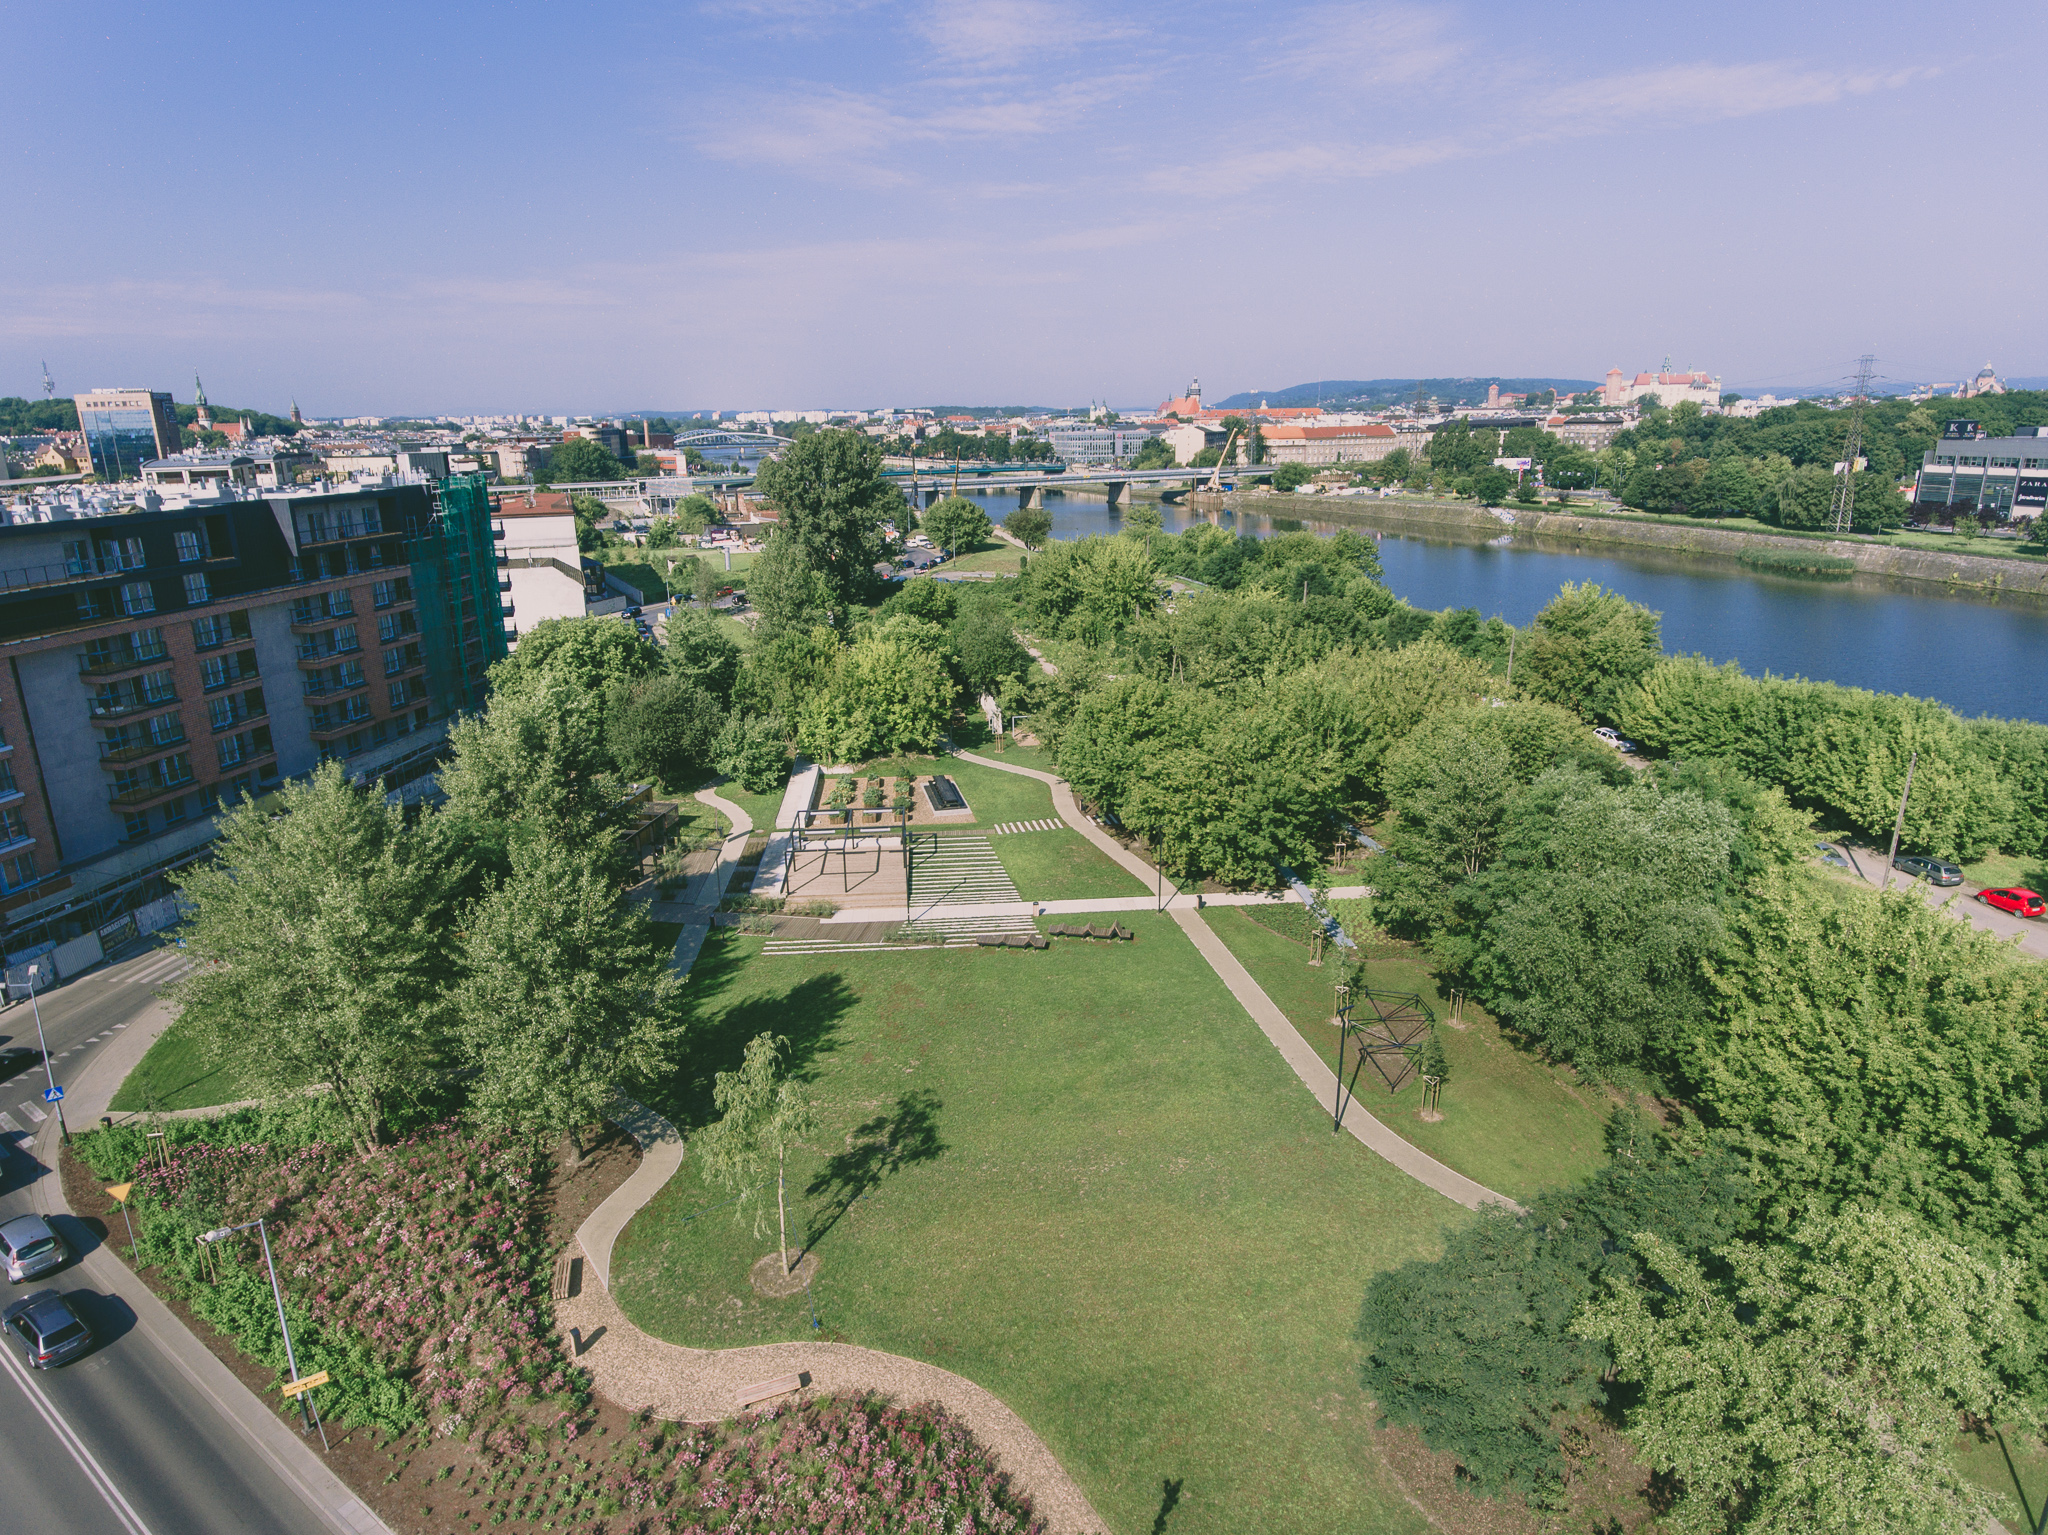 Де погуляти? ТОП-8 найгарніших парків Кракова із “родзинкою” dji 0060